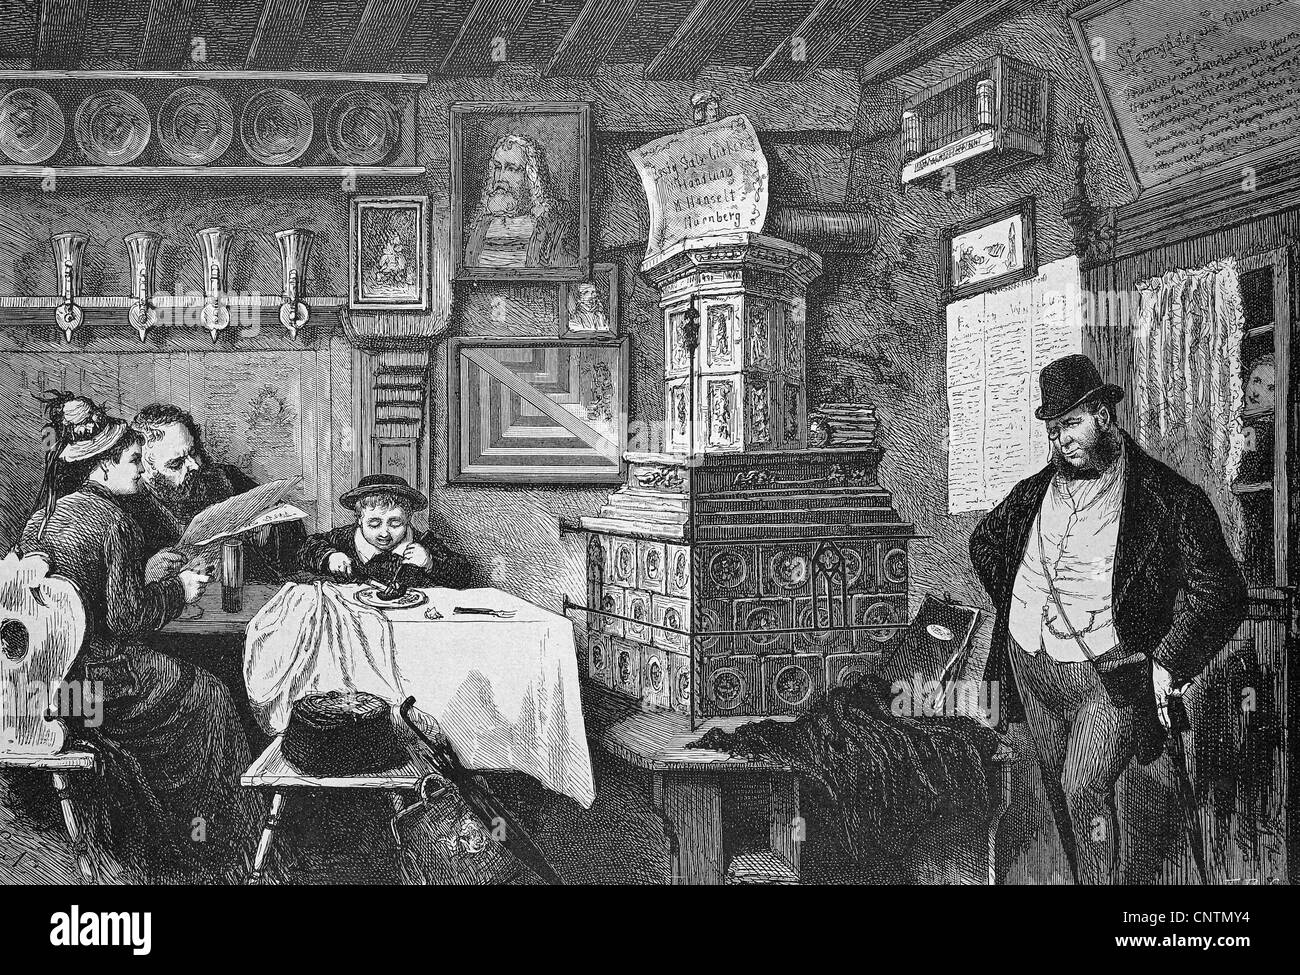 Bei der Bratwurstgloeckle, Restaurant in Nürnberg, Bayern, Deutschland, historische Holzstich, ca. 1880 Stockfoto